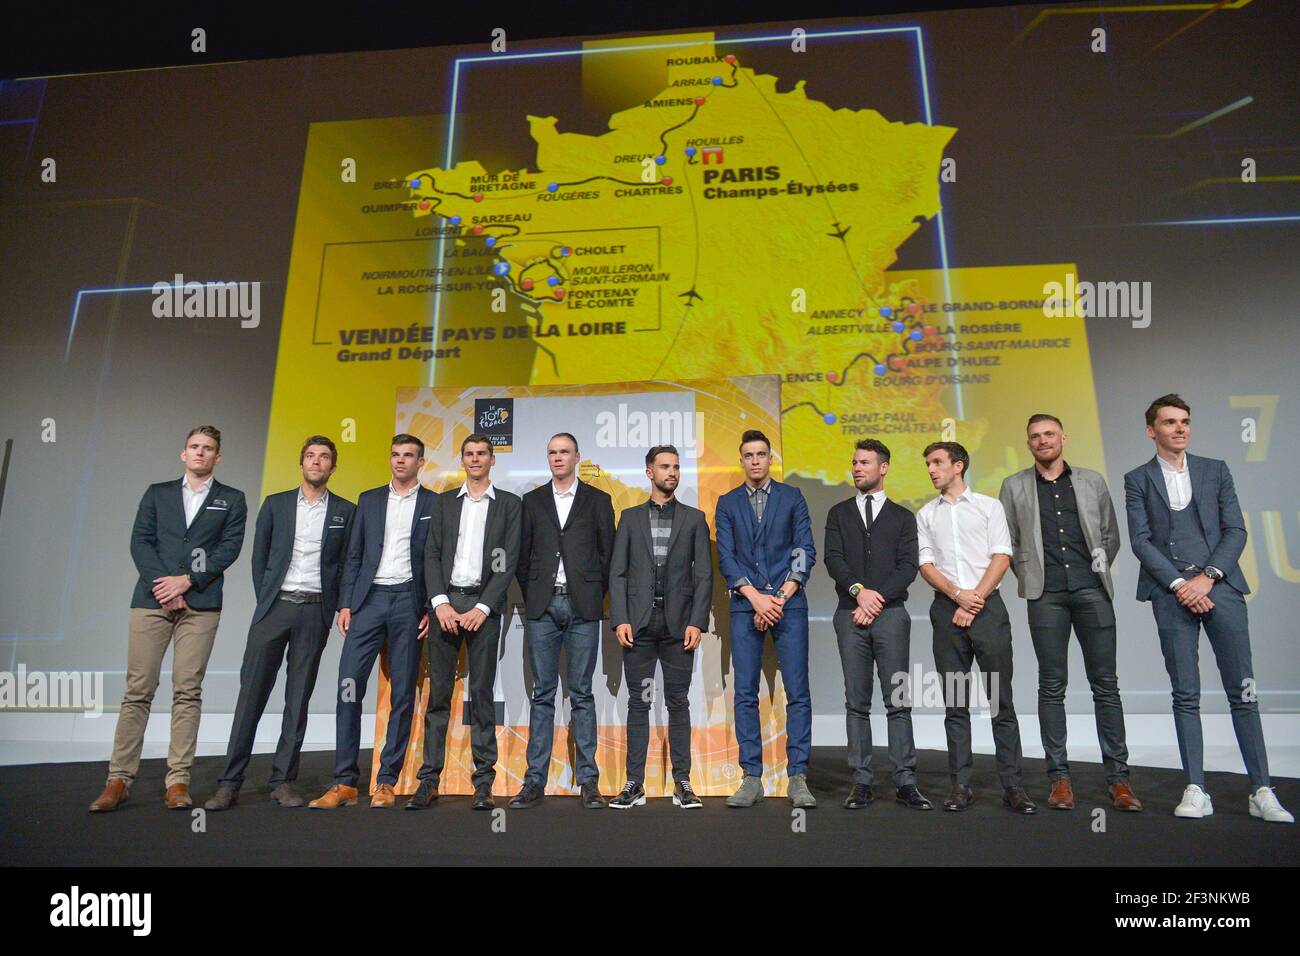 La présentation du 105e Tour de France 2018 le 17 octobre 2017 au Palais des Congrès à Paris, France - photo I-HARIS / DPPI Banque D'Images